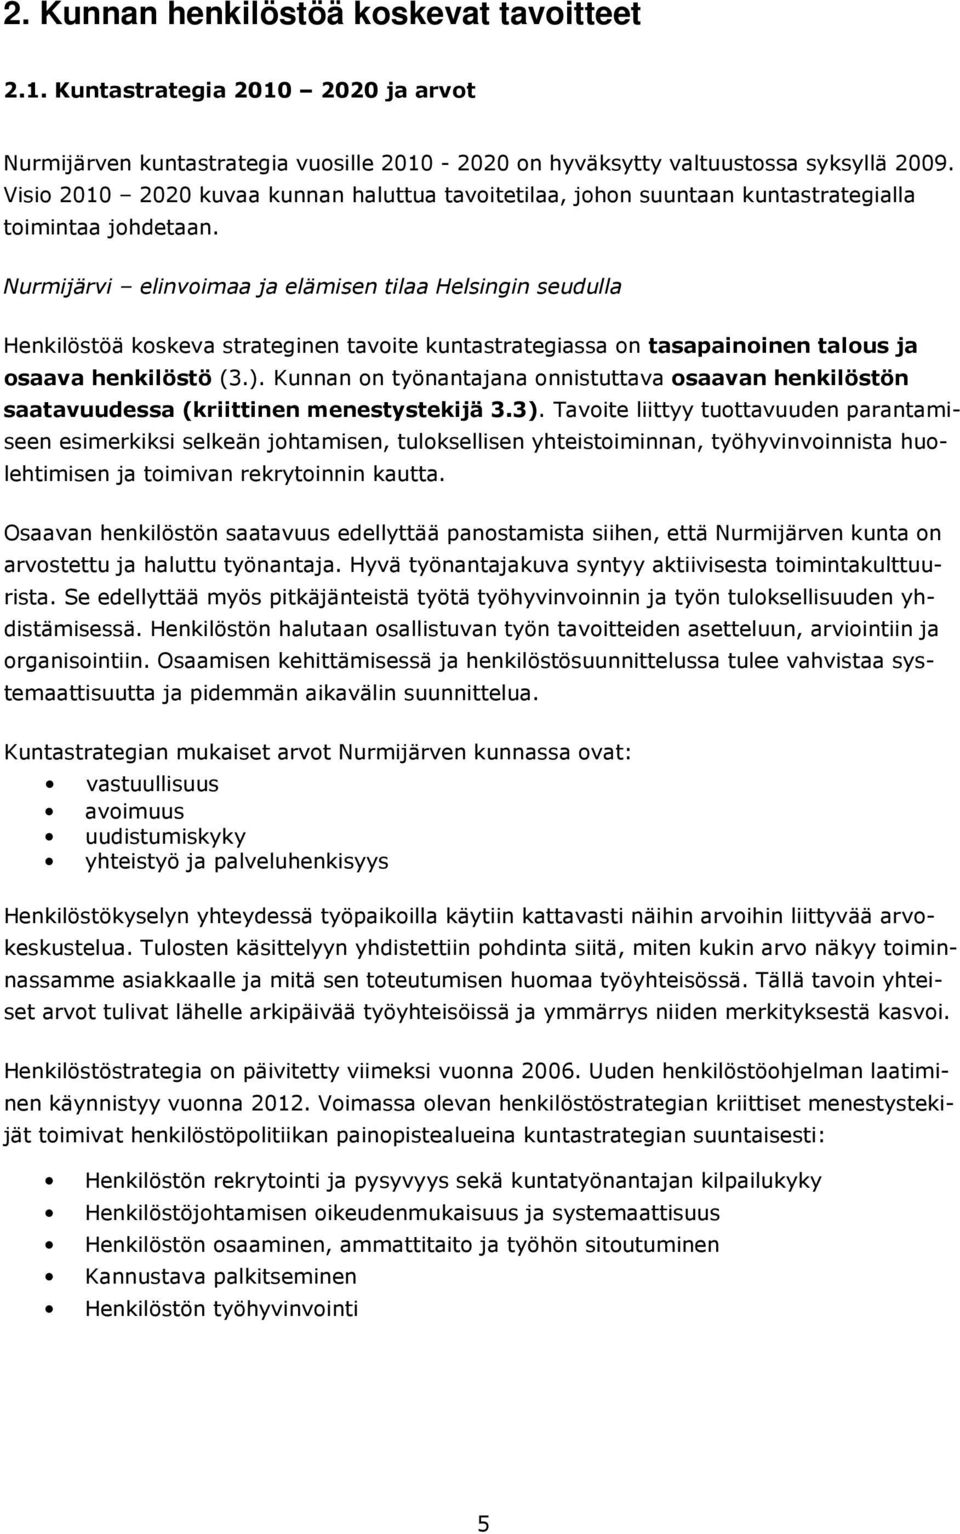 Nurmijärvi elinvoimaa ja elämisen tilaa Helsingin seudulla Henkilöstöä koskeva strateginen tavoite kuntastrategiassa on tasapainoinen talous ja osaava henkilöstö (3.).